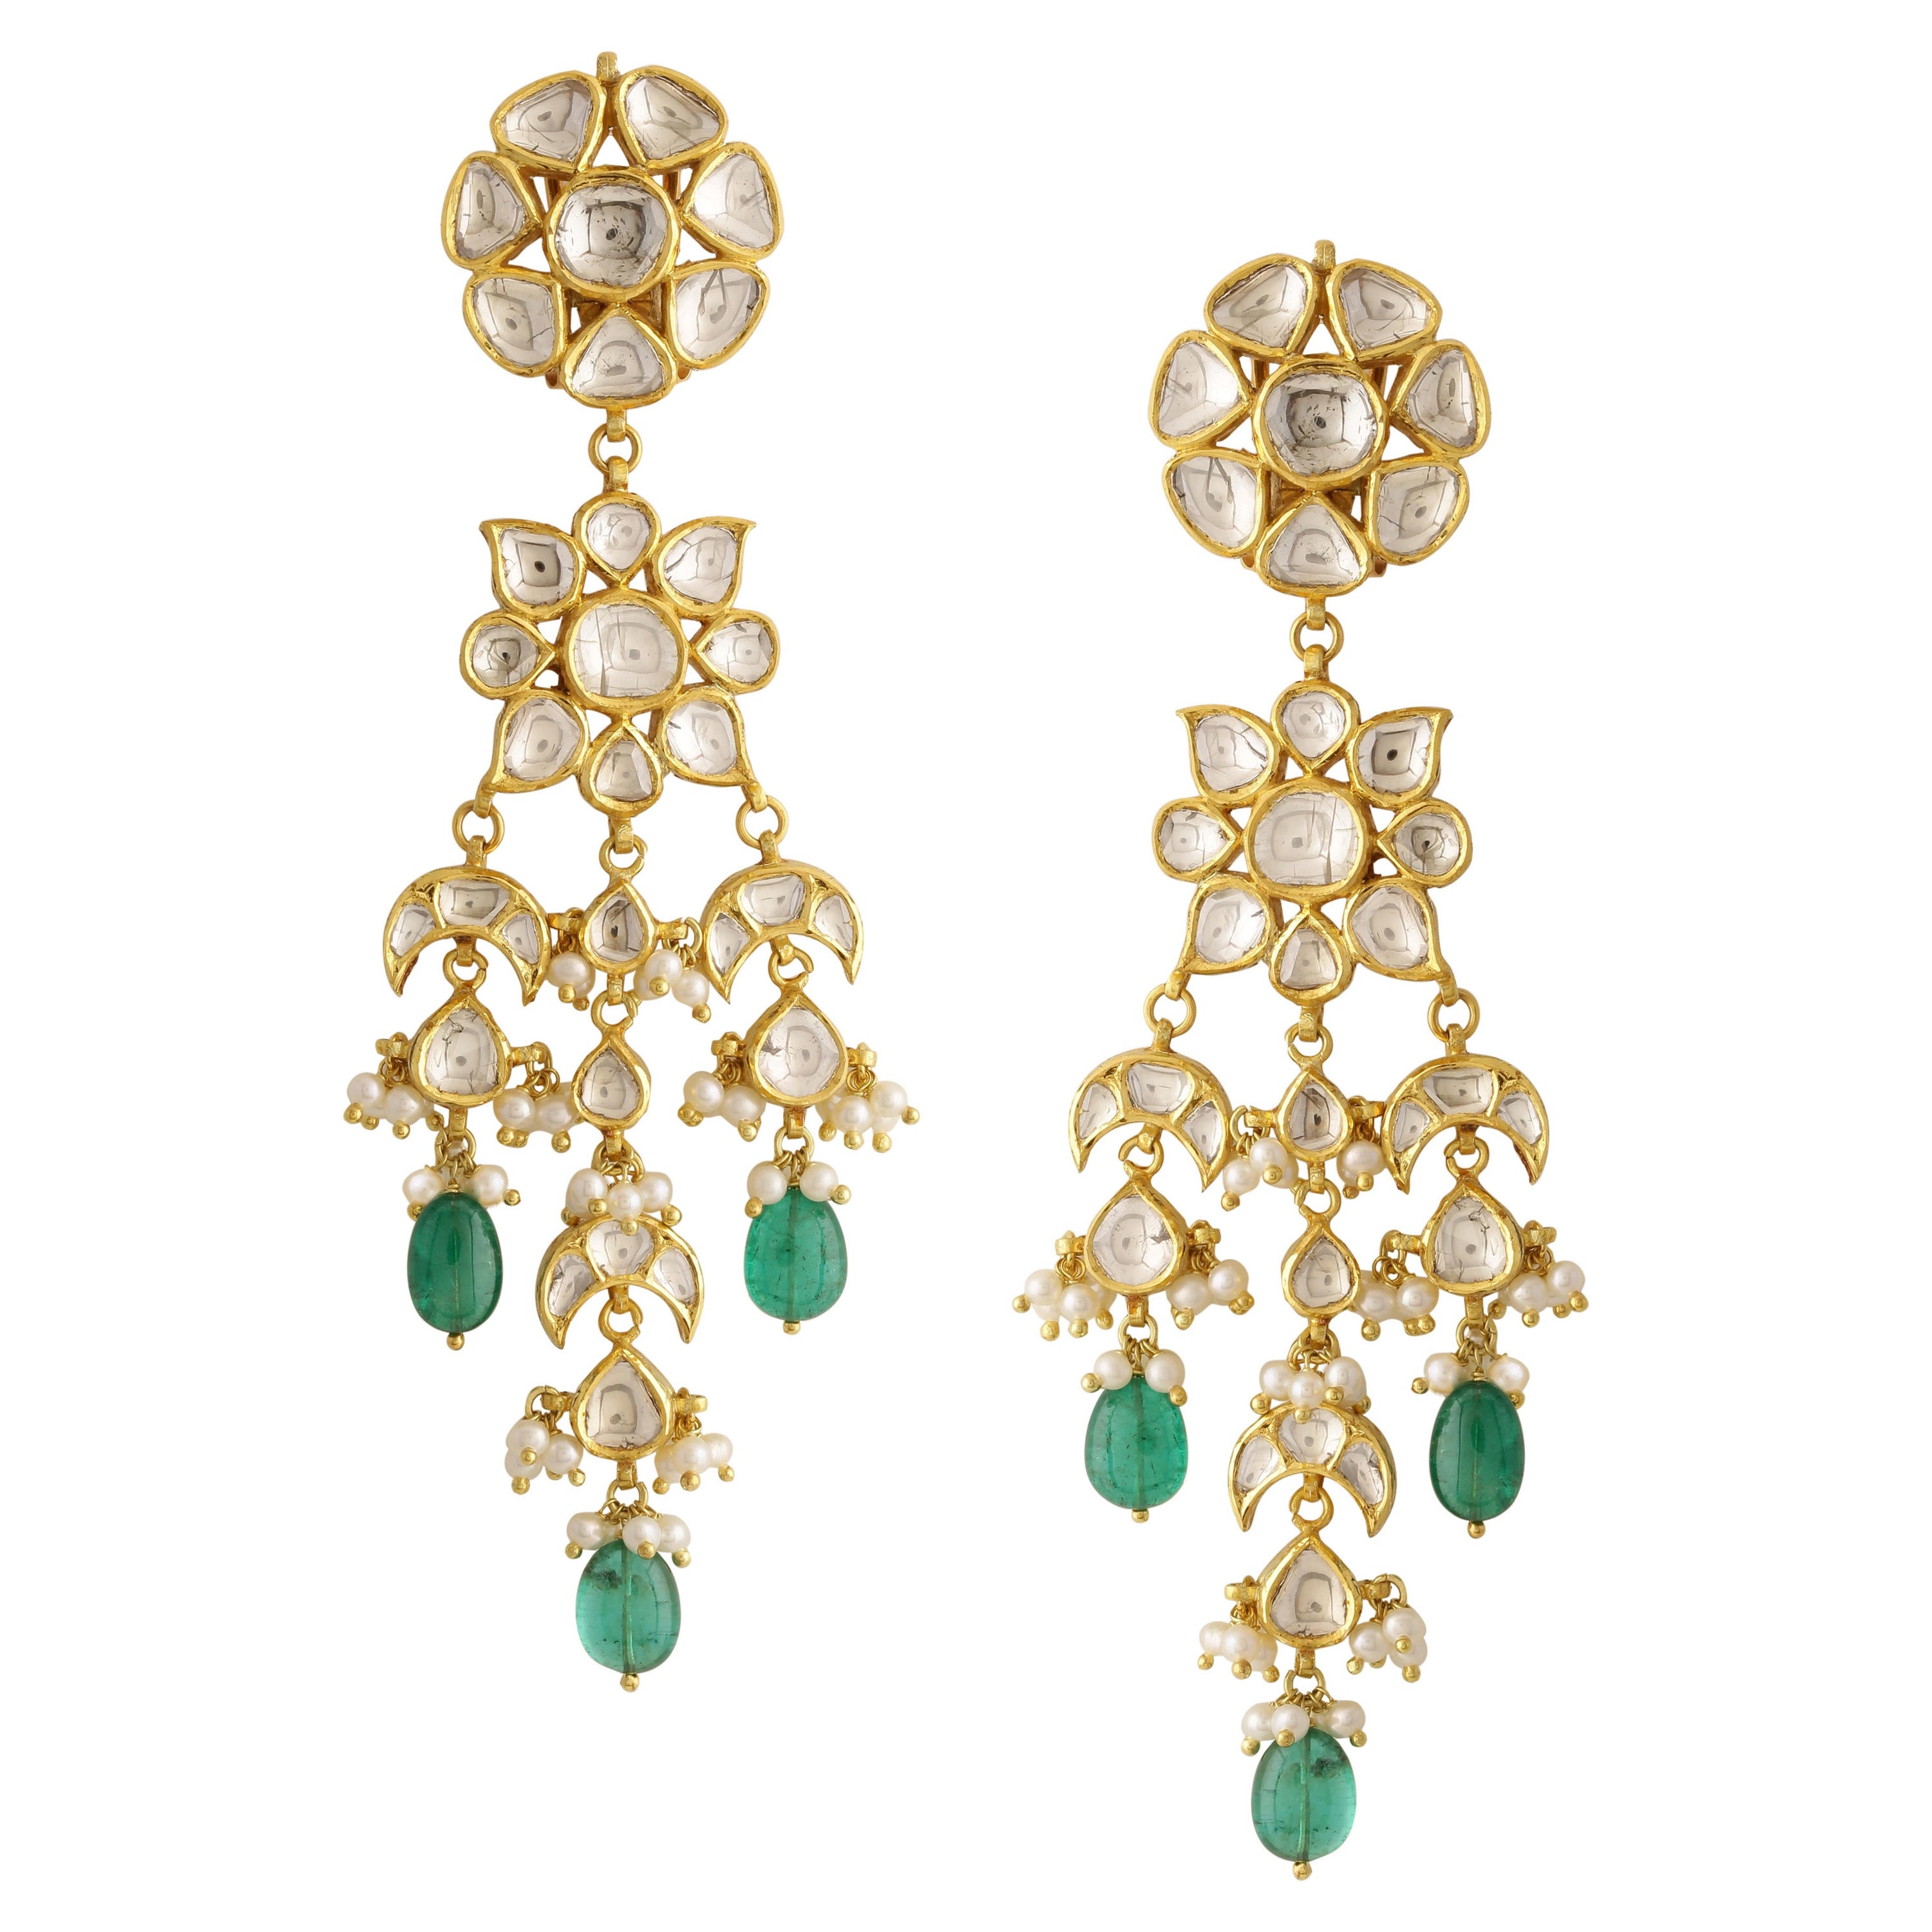 Chandelier-Ohrring mit Diamanten und Smaragden, handgefertigt aus 18 Karat Gold mit feiner Emaille